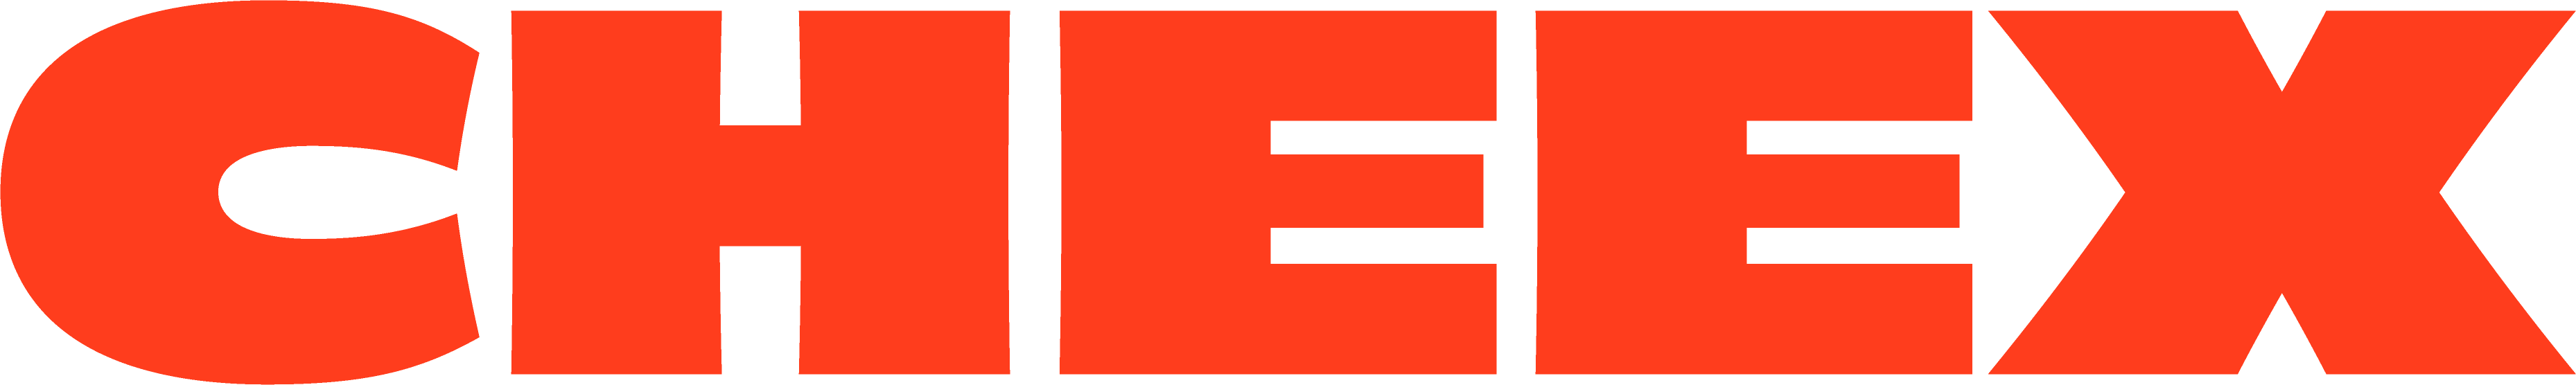 CHEEX_Logotype_Orange